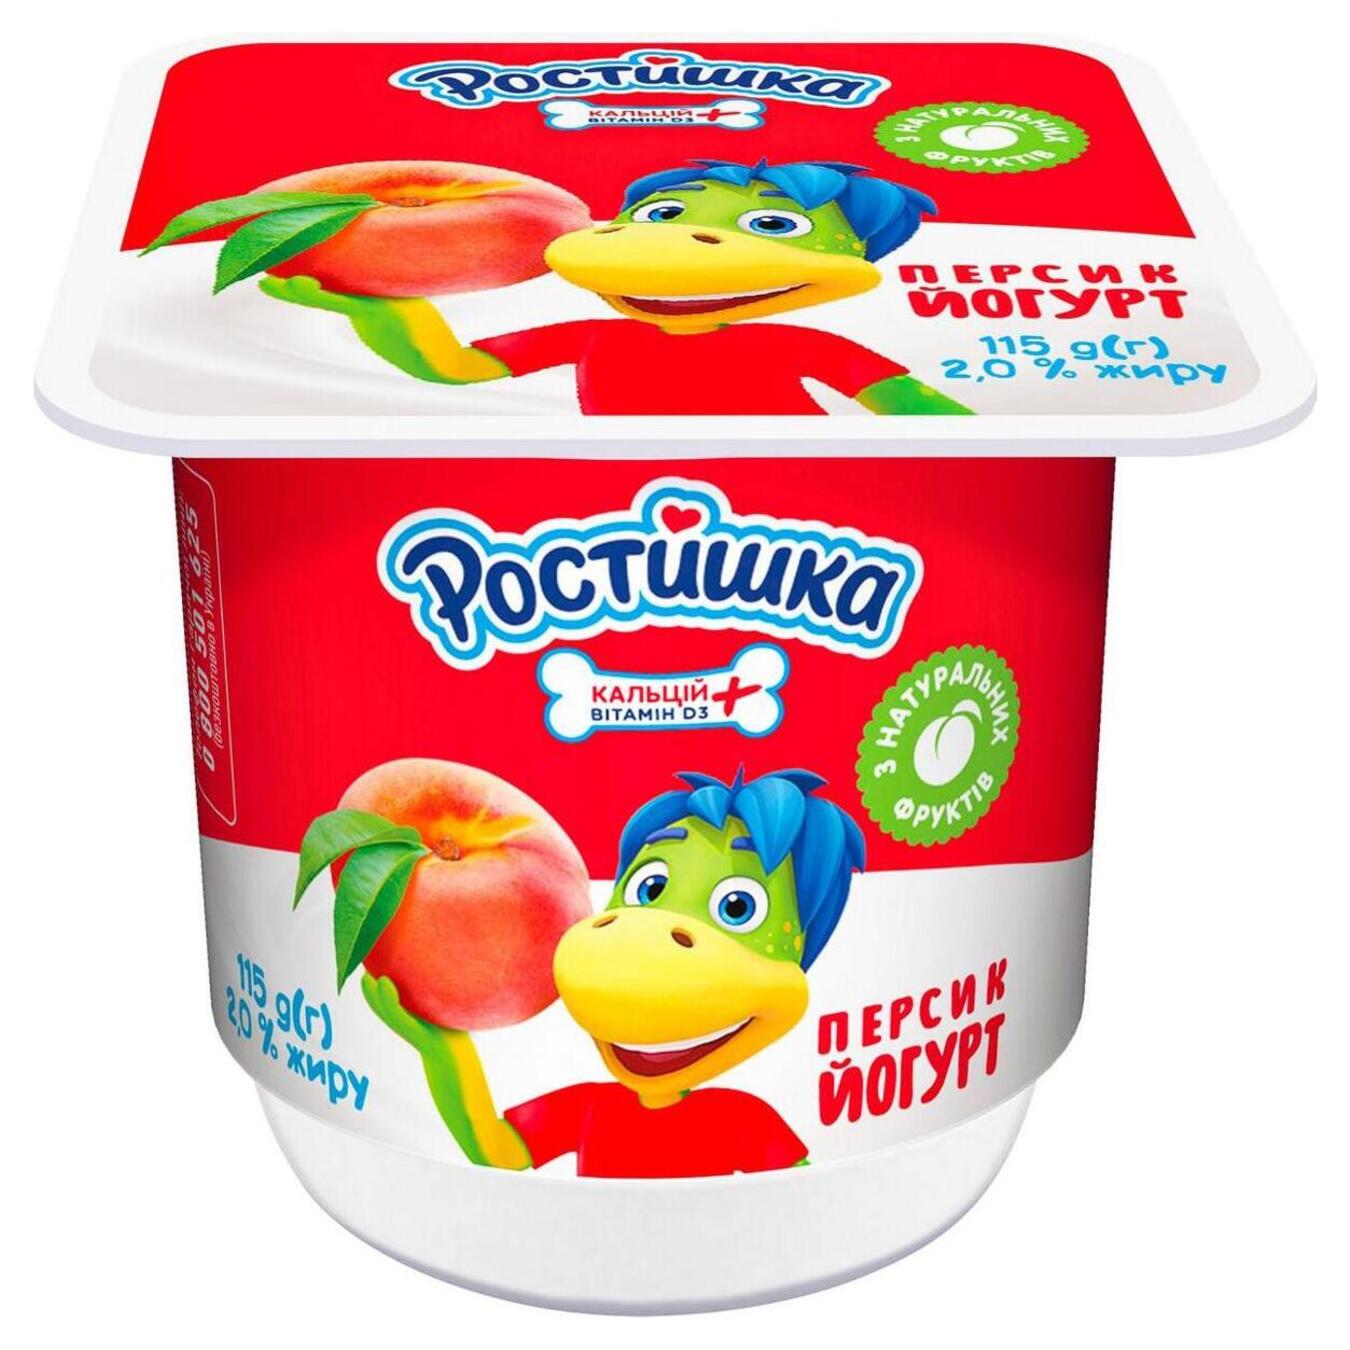 Йогурт Ростишка персик стакан 2% 115г